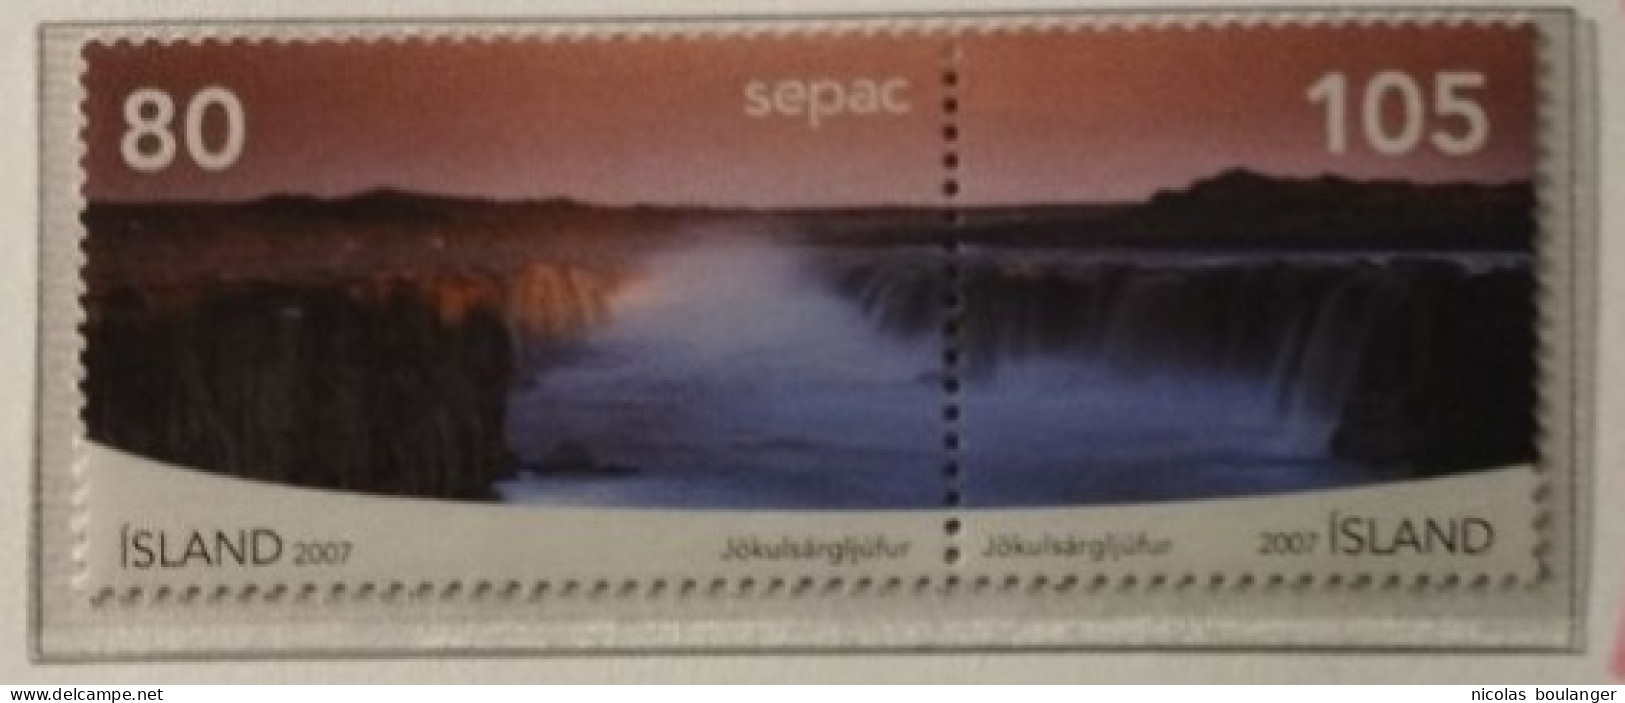 Islande 2007 / Yvert N°1106-1107 / ** - Used Stamps